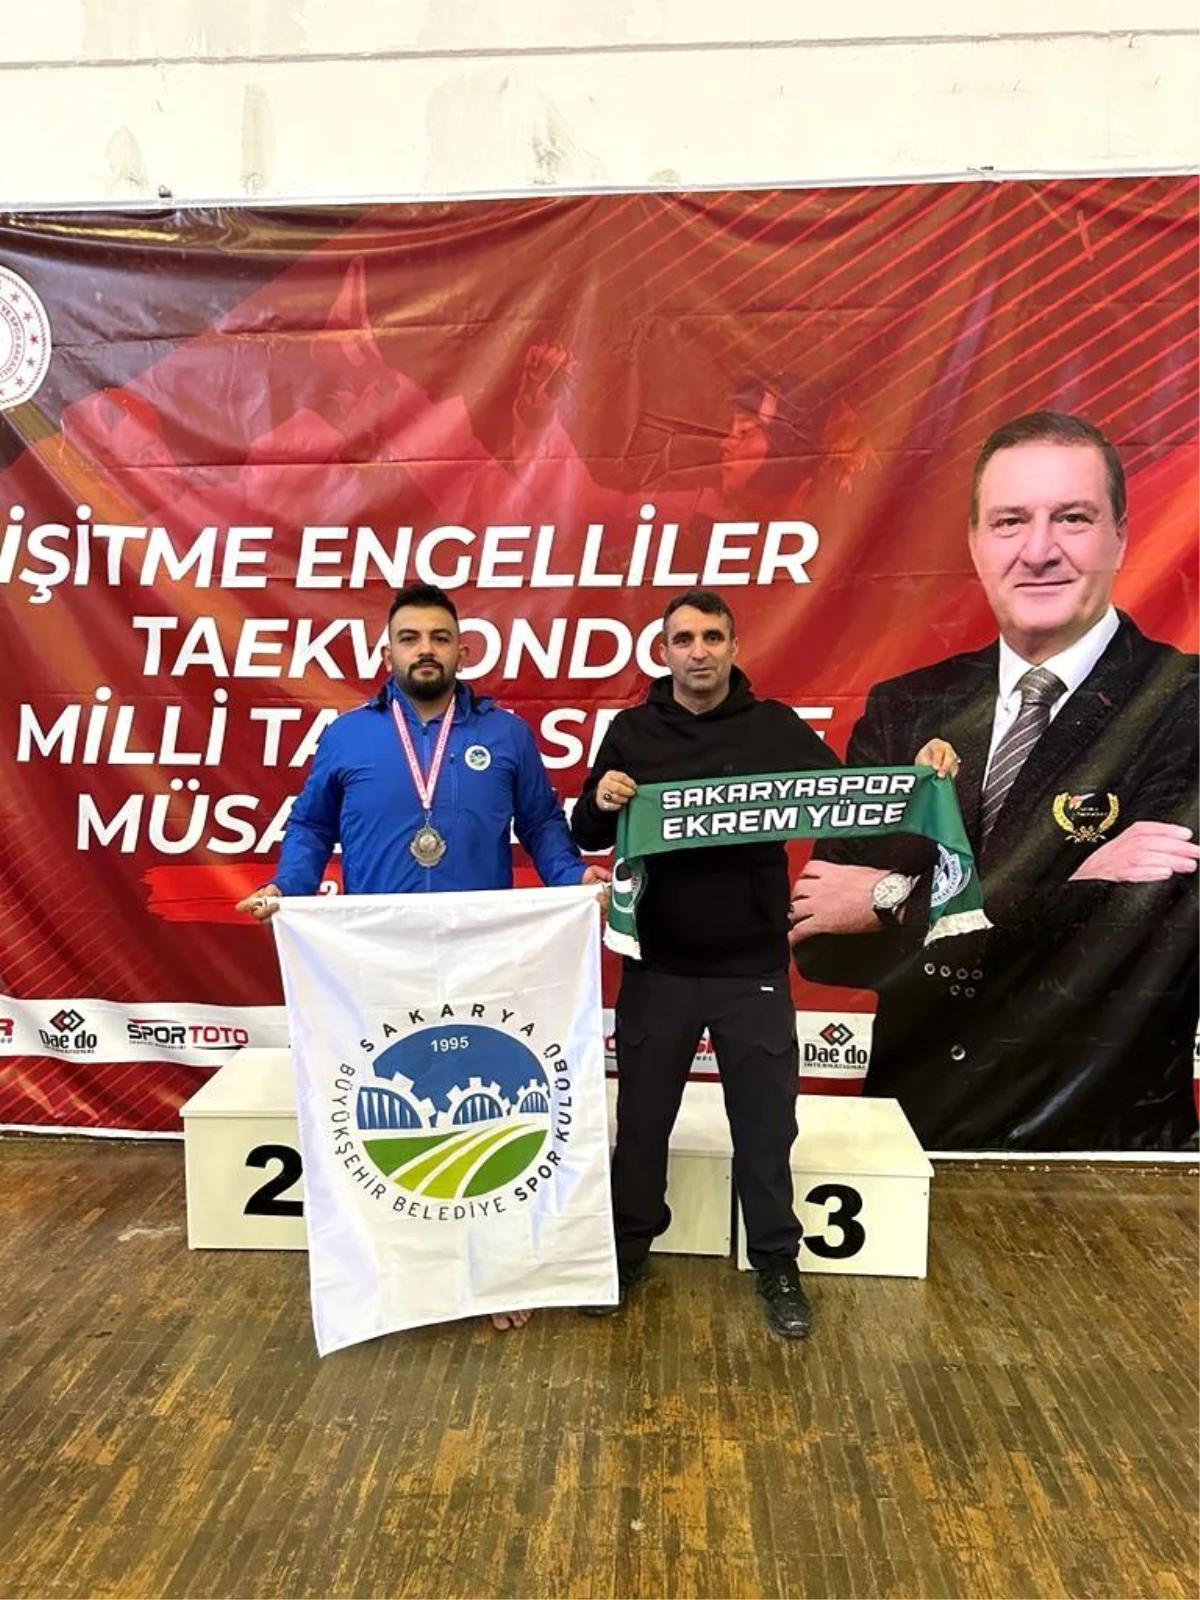 Sakarya Büyükşehir Belediyesi İşitme Engelli Taekwondo sporcusu Milli Takım seçmelerinde ikinci oldu